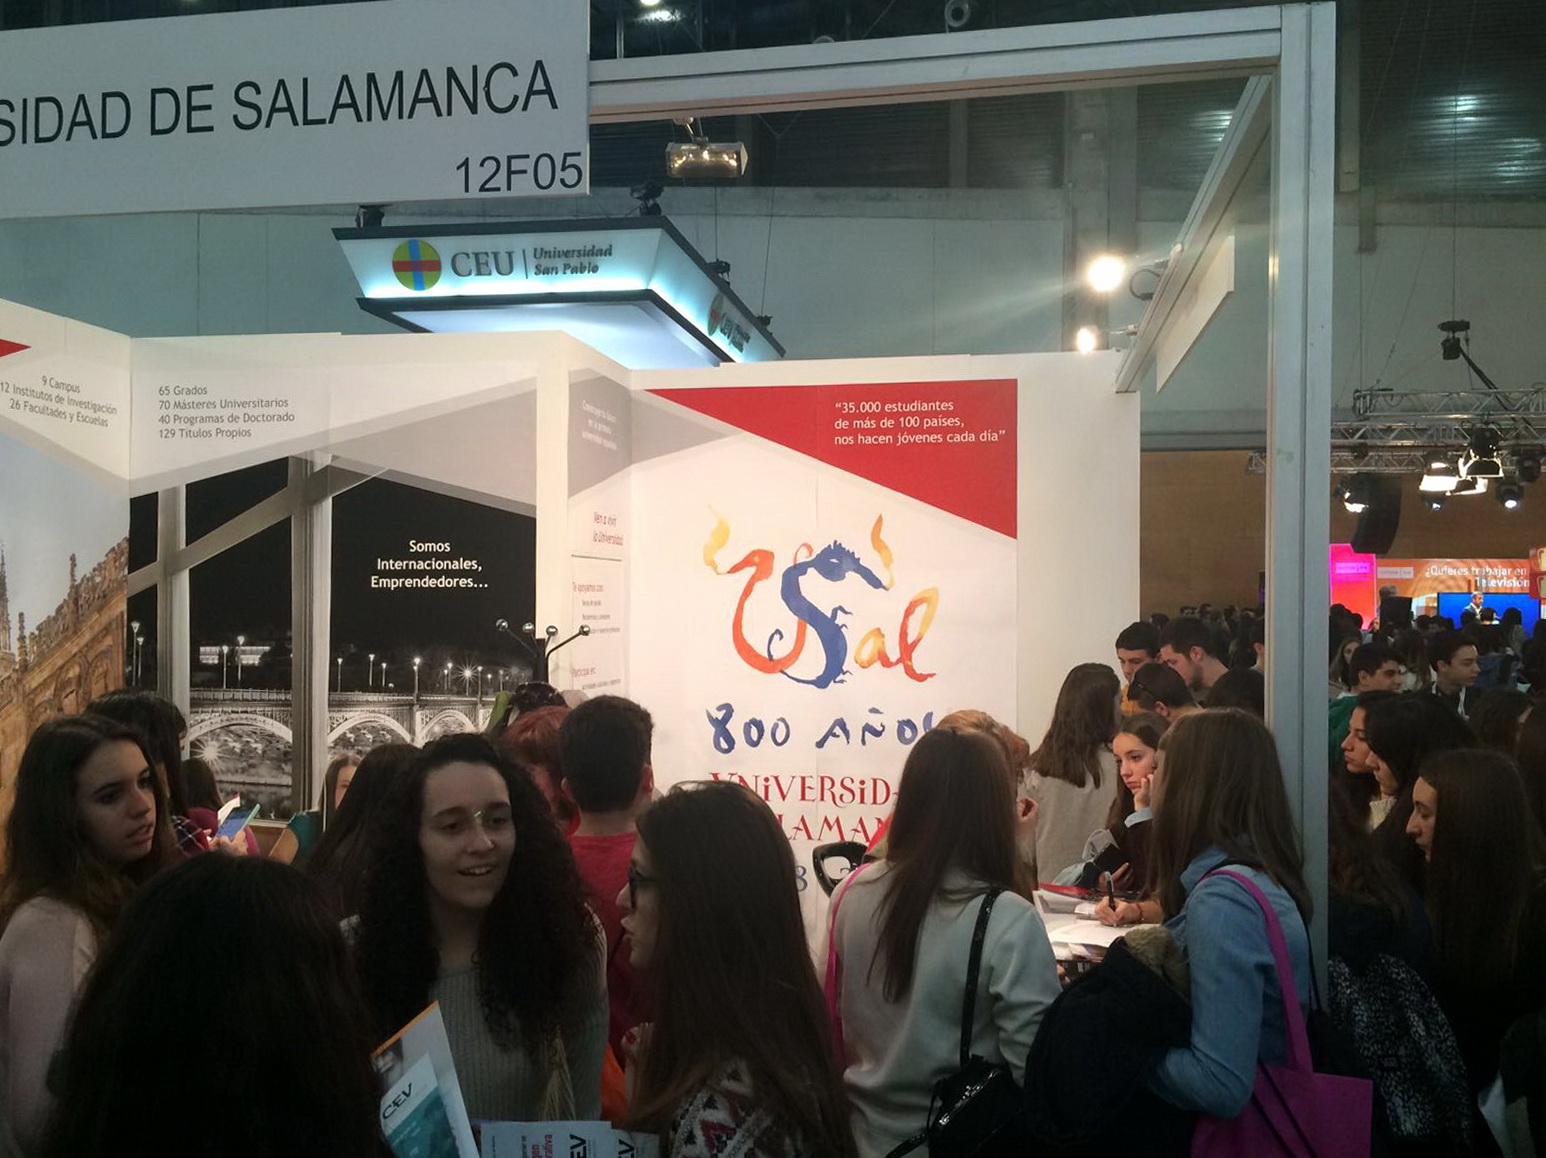 La Universidad de Salamanca presenta su amplia oferta formativa en la Feria AULA